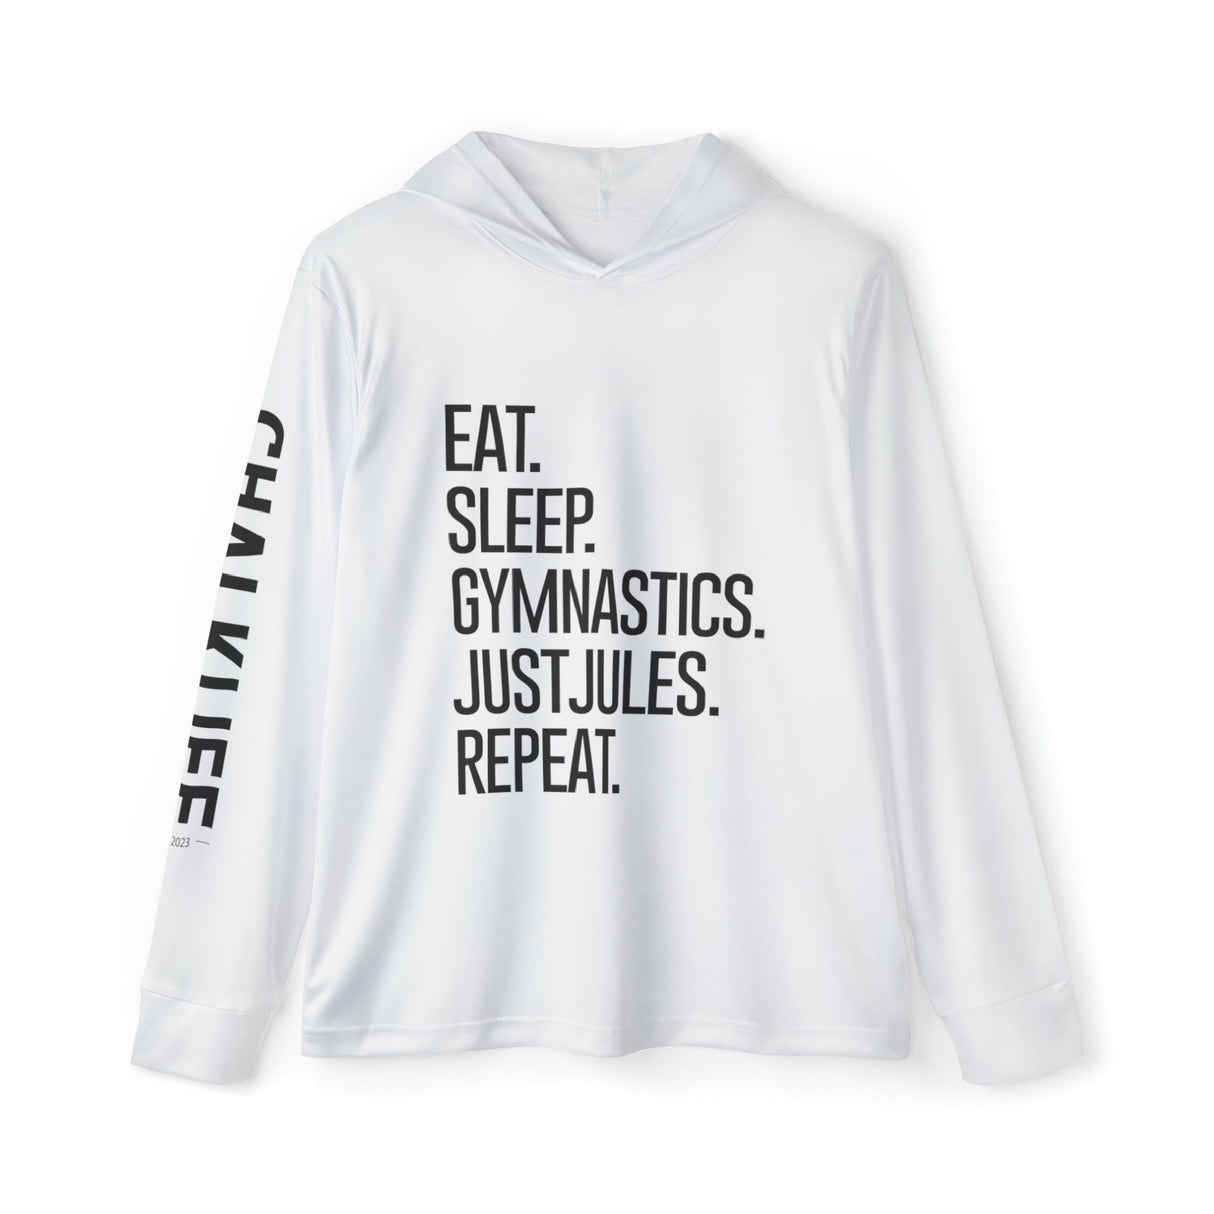 JUSTJULES - Eat. Sleep. Gymnastics. JustJules. Repeat. Performance Hoodie - Chalklife, LLC